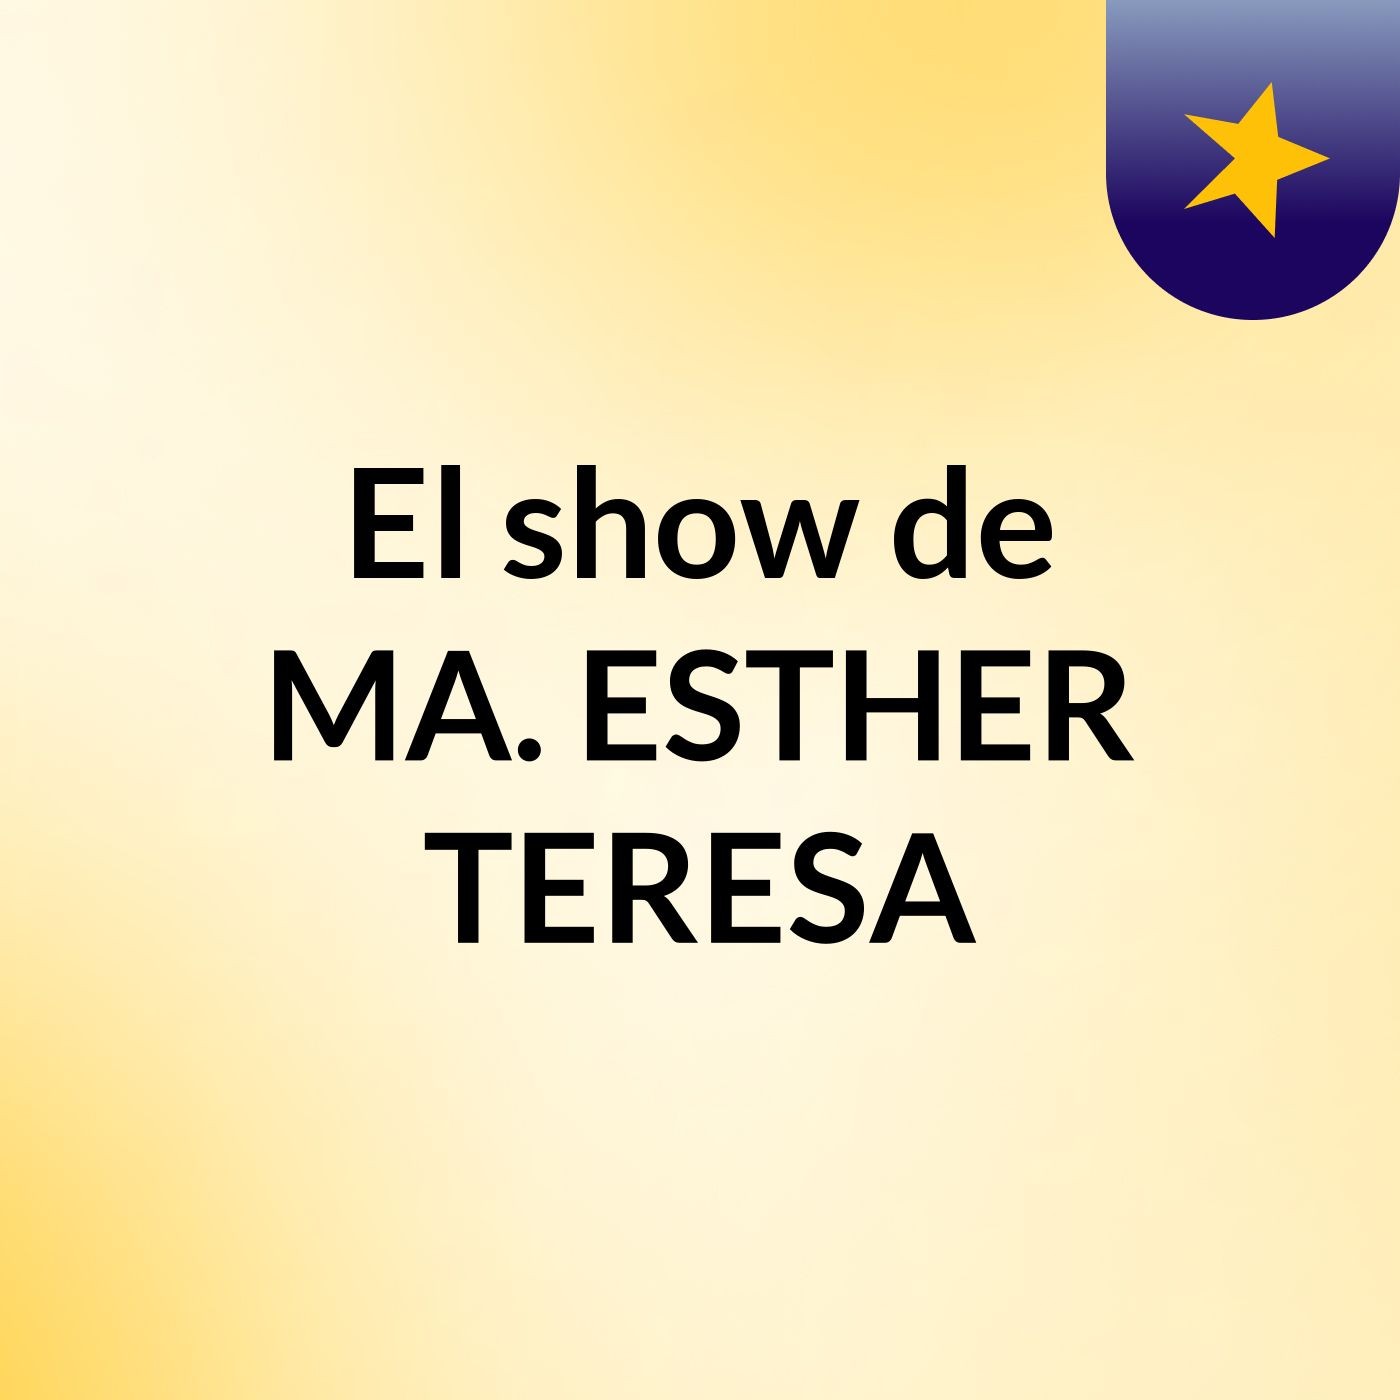 El show de MA. ESTHER TERESA